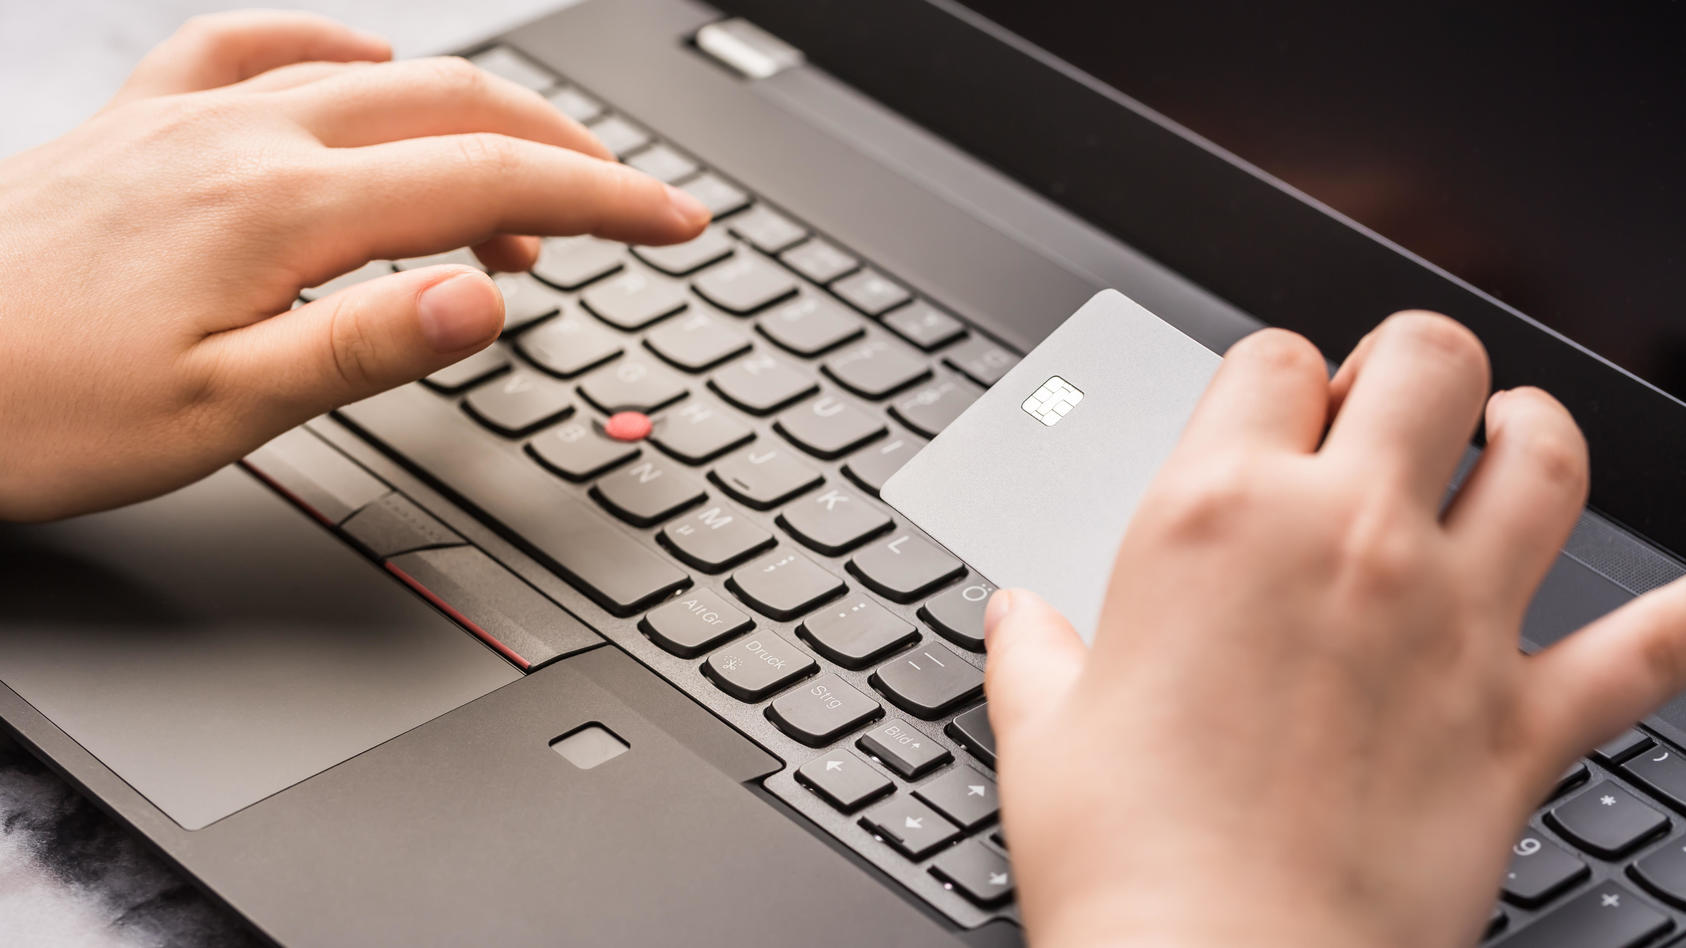 Eine Hand hält eine Kreditkarte vor einer Laptop-Tastatur